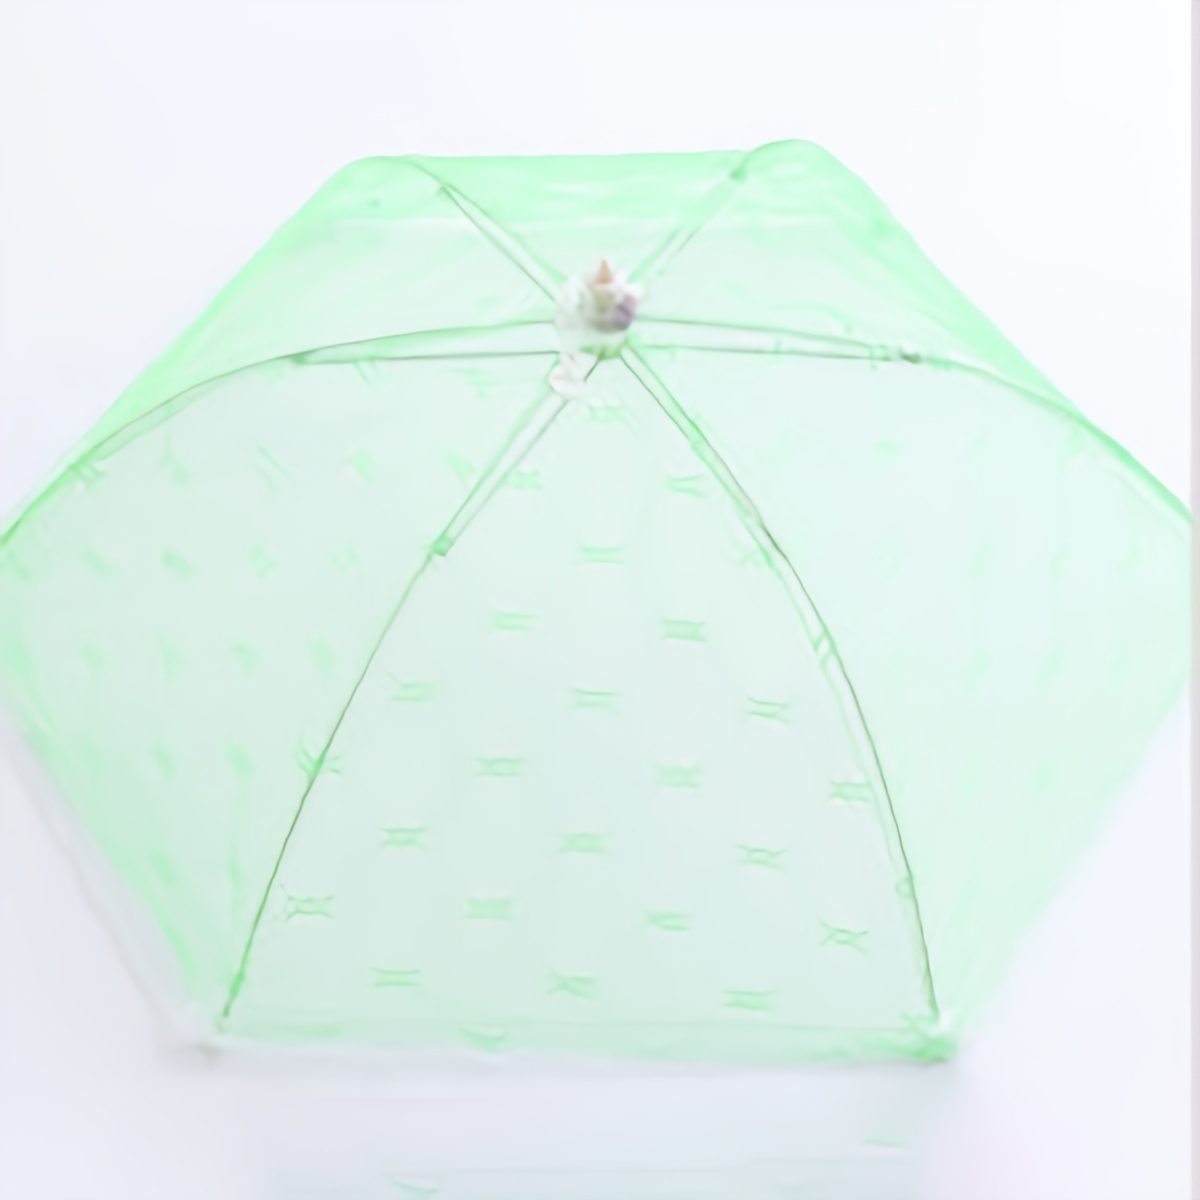 1 Stück Lebensmittelabdeckungen Im Regenschirm-Stil, Anti-Fliegen